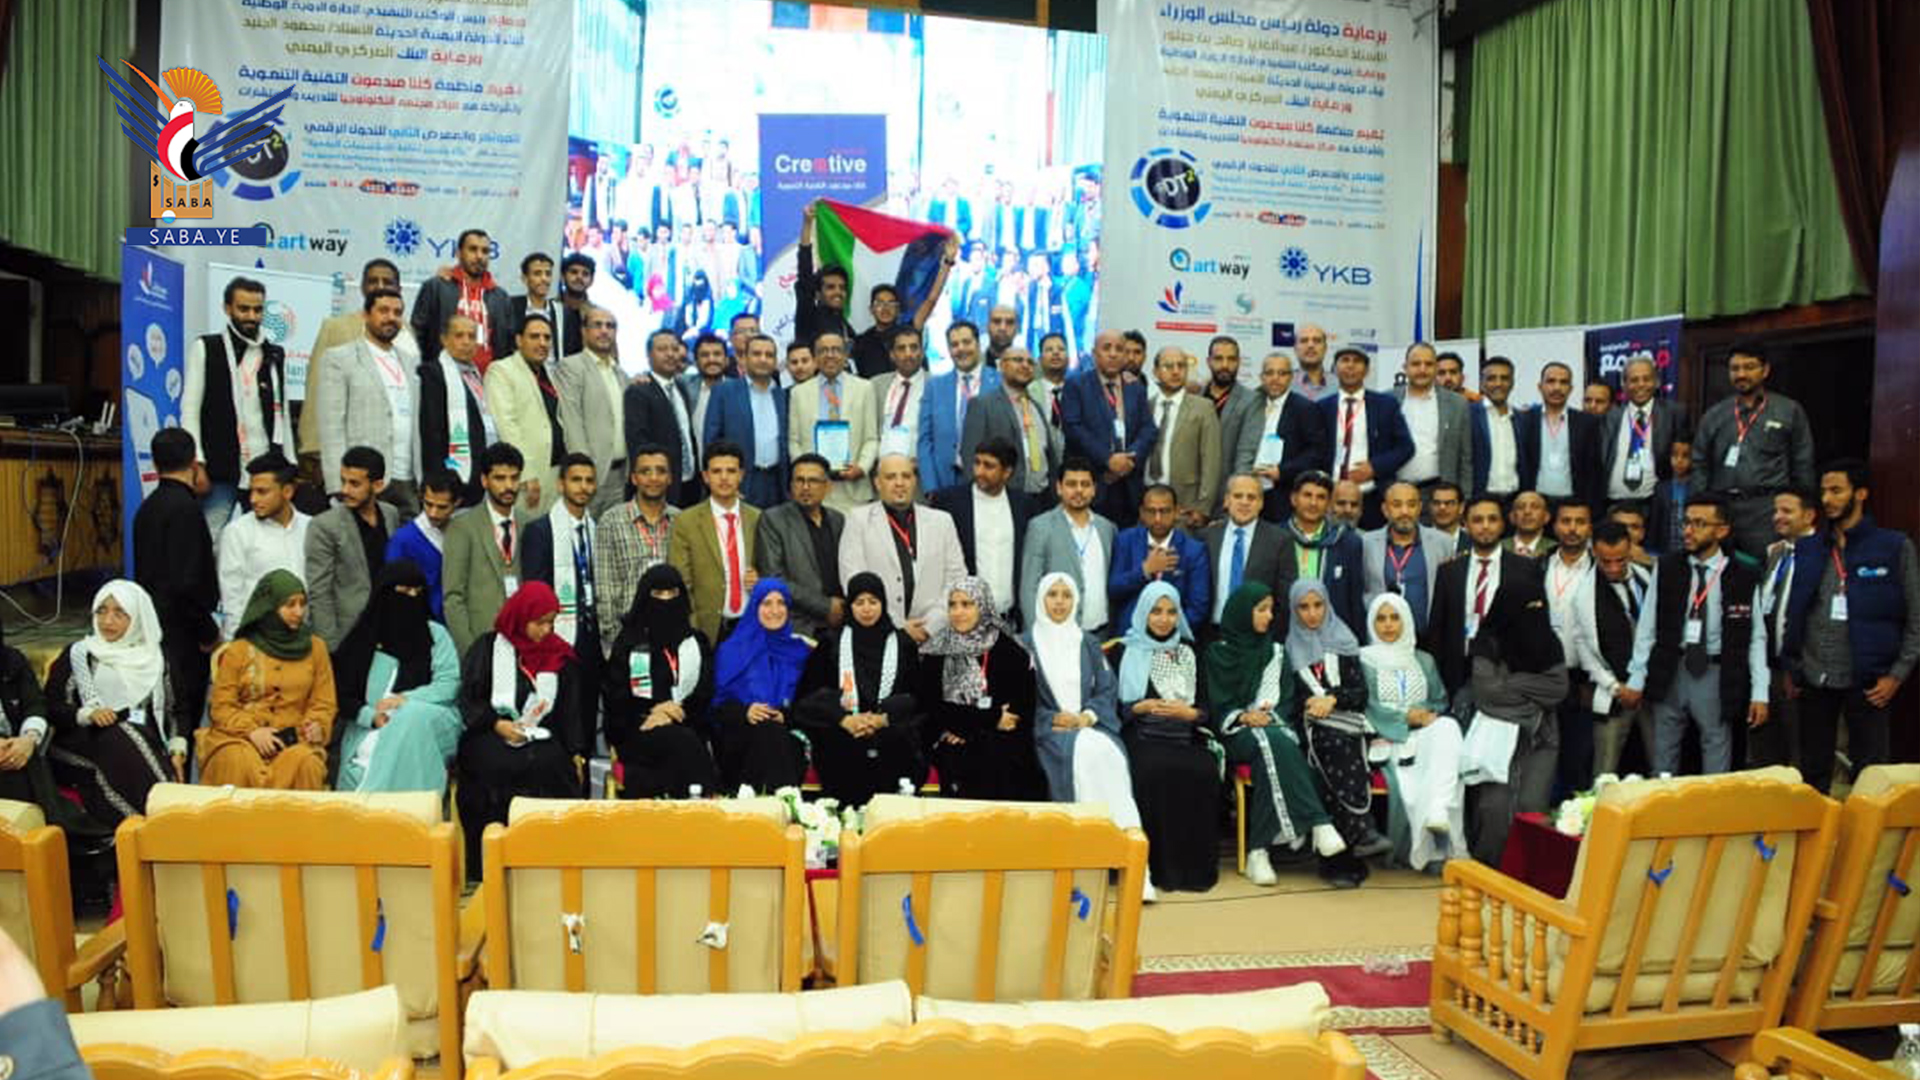 اختتام فعاليات المؤتمر الثاني للتحول الرقمي في اليمن